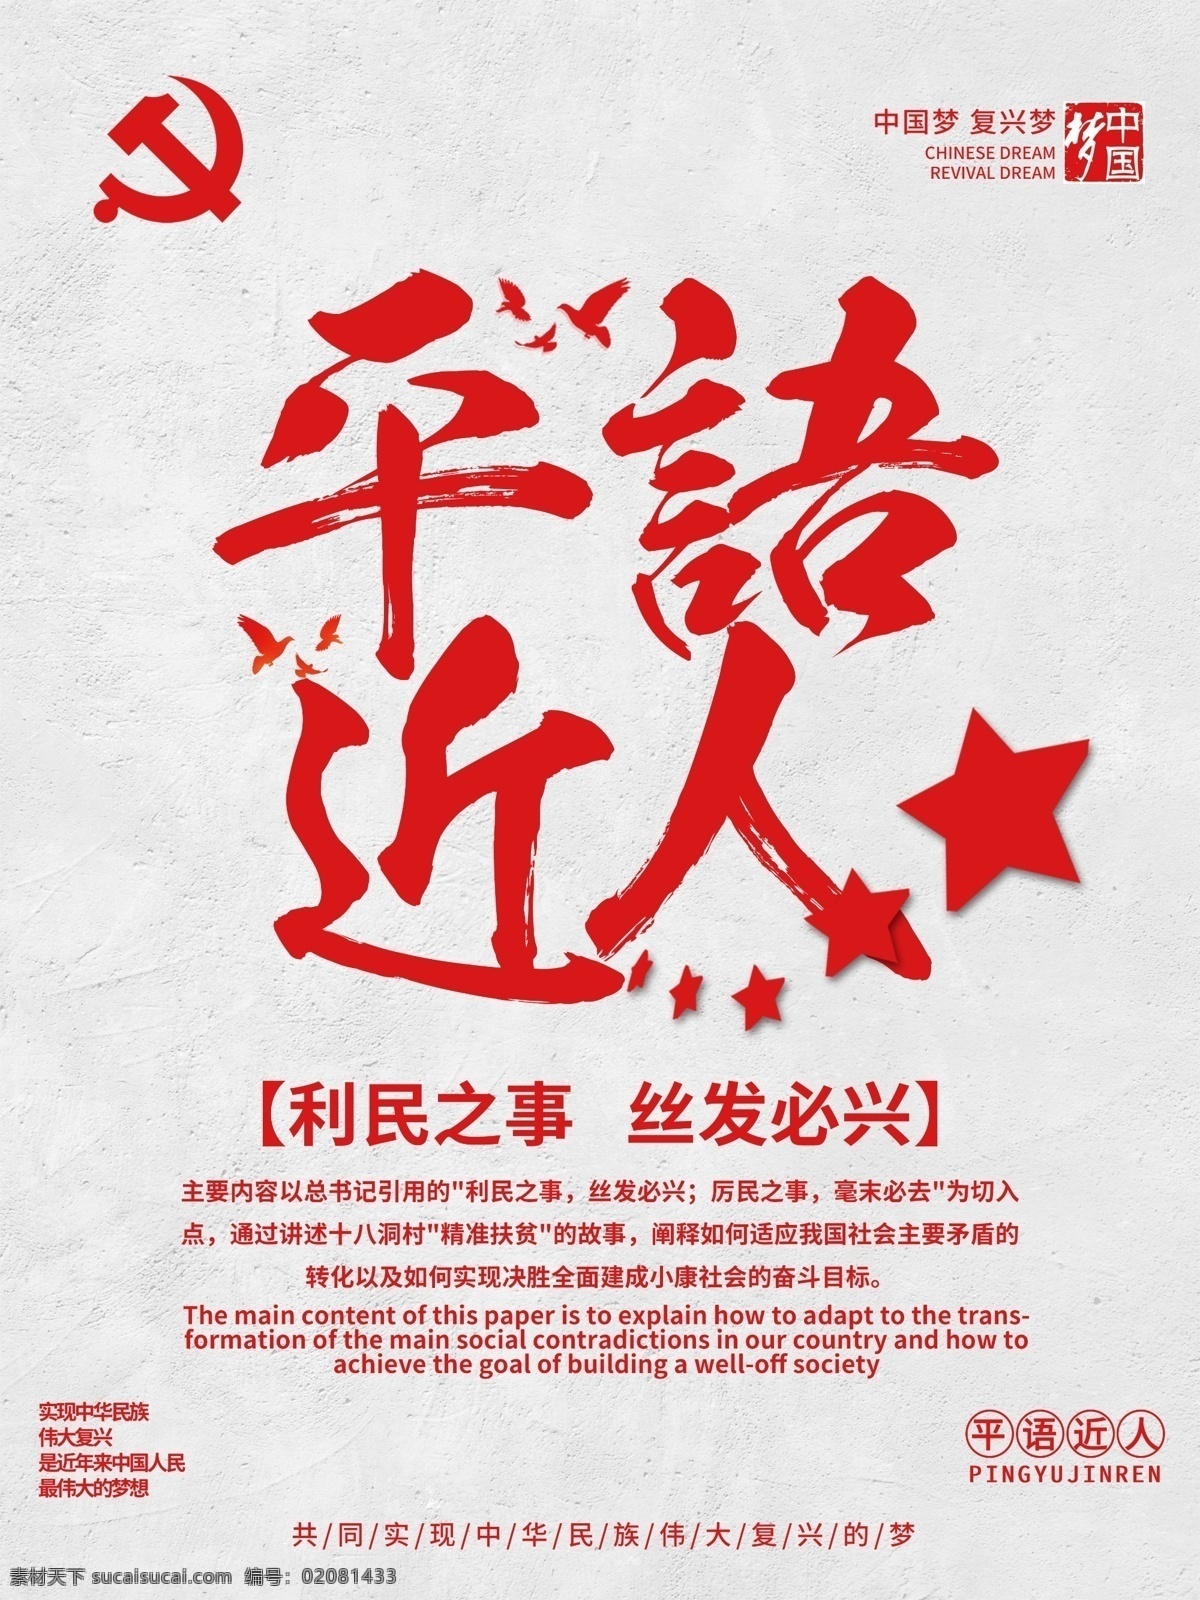 简约 红色 平语 近人 党建 宣传海报 党员 五星 中国梦 平语近人